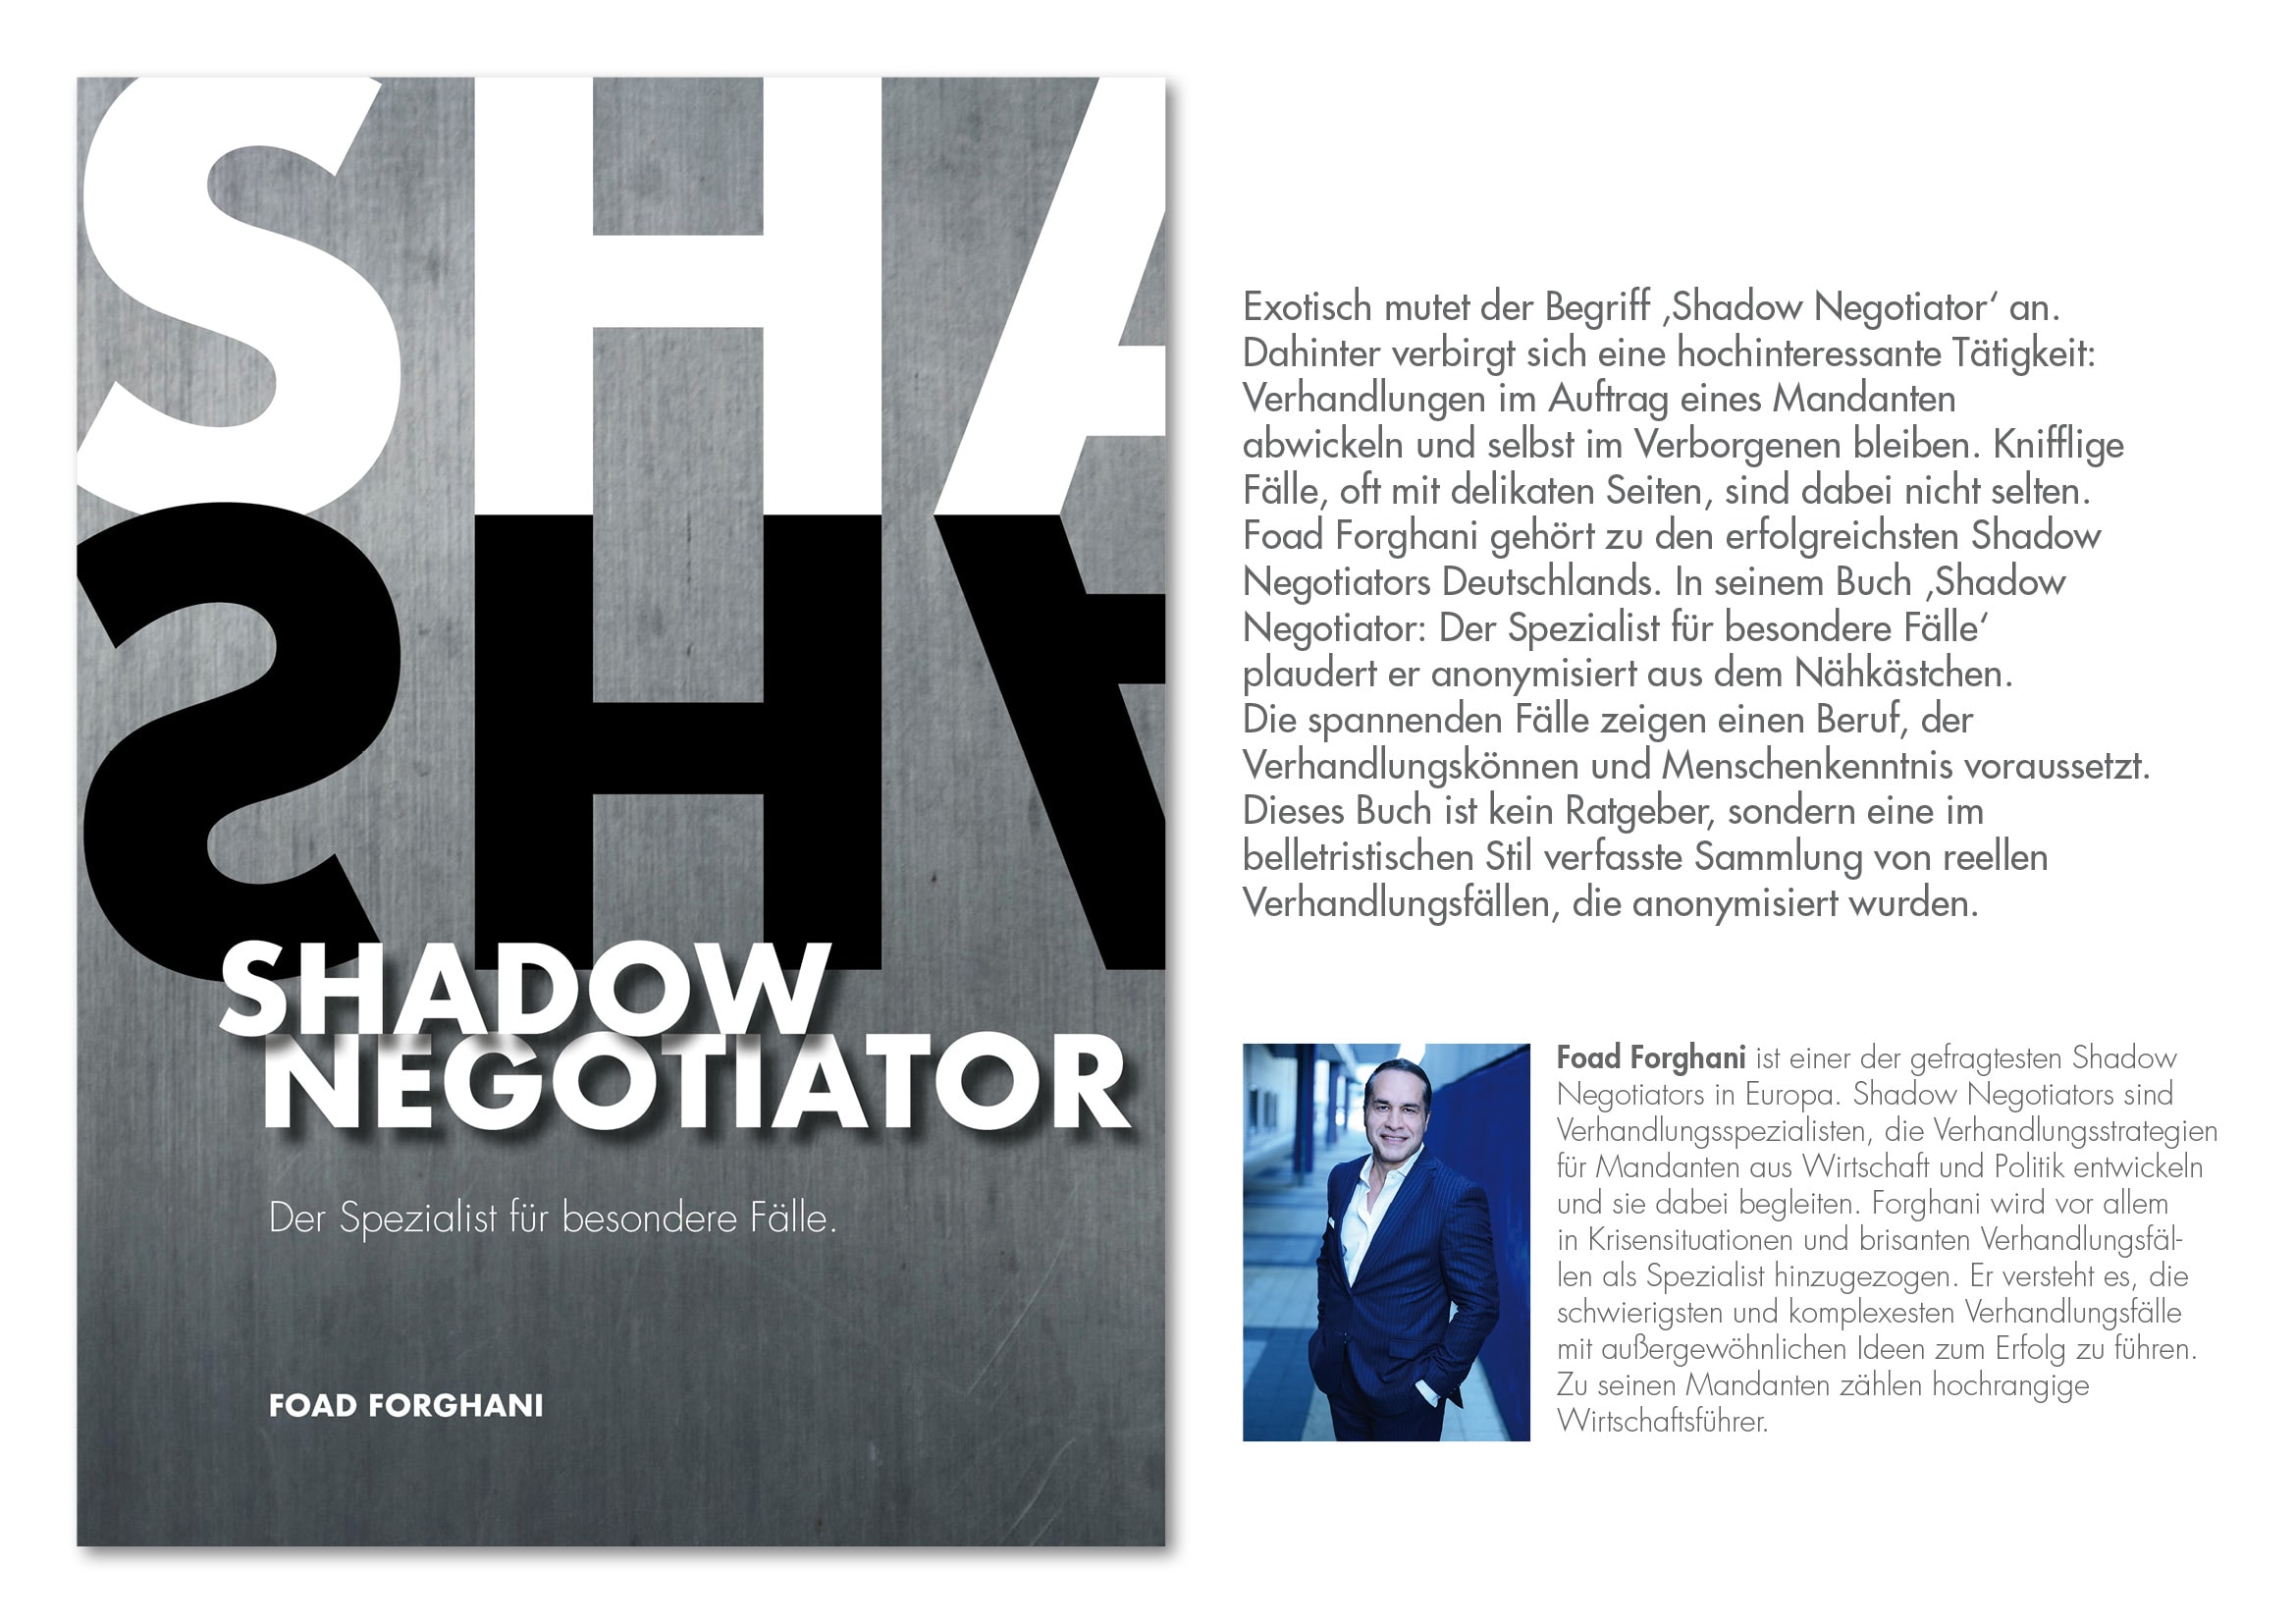 Buchcover-Design Shadow Negotiator von Autor Foad Forghani durch Grafik-Designer Ronald Wissler